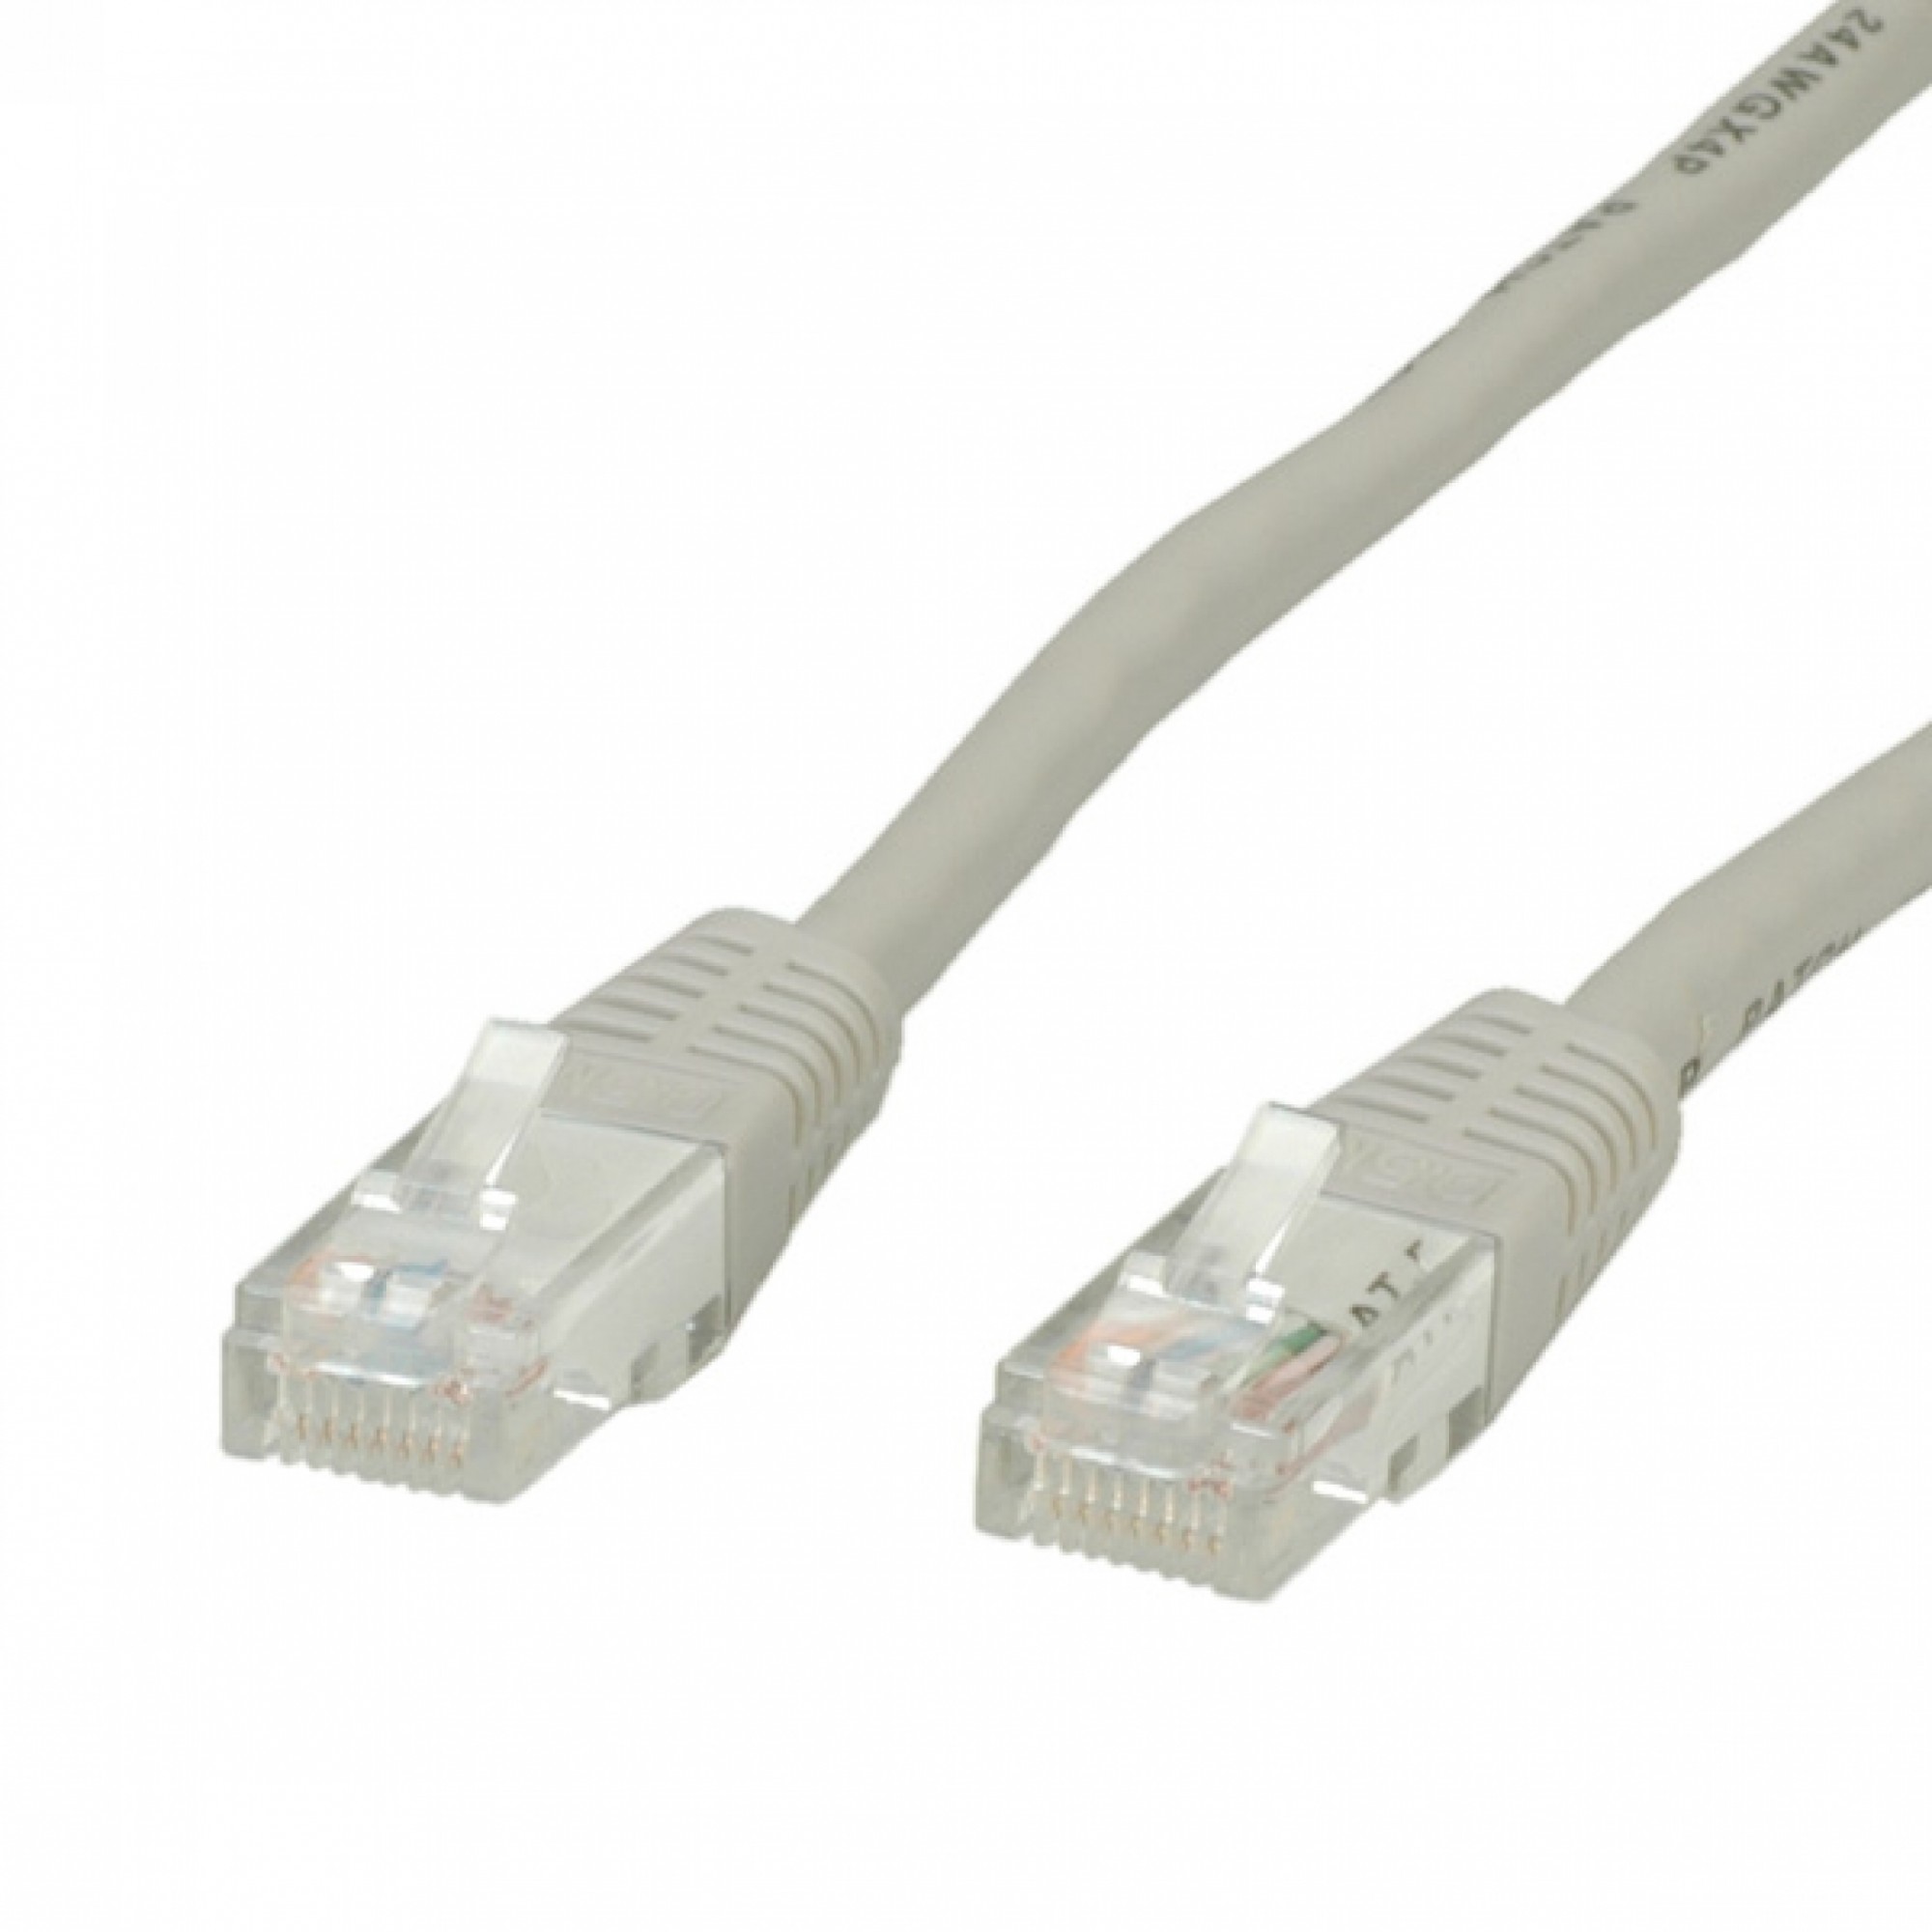 Cablu UTP Cat.6, gri, 10m, Value 21.99.0910 - eMAG.ro